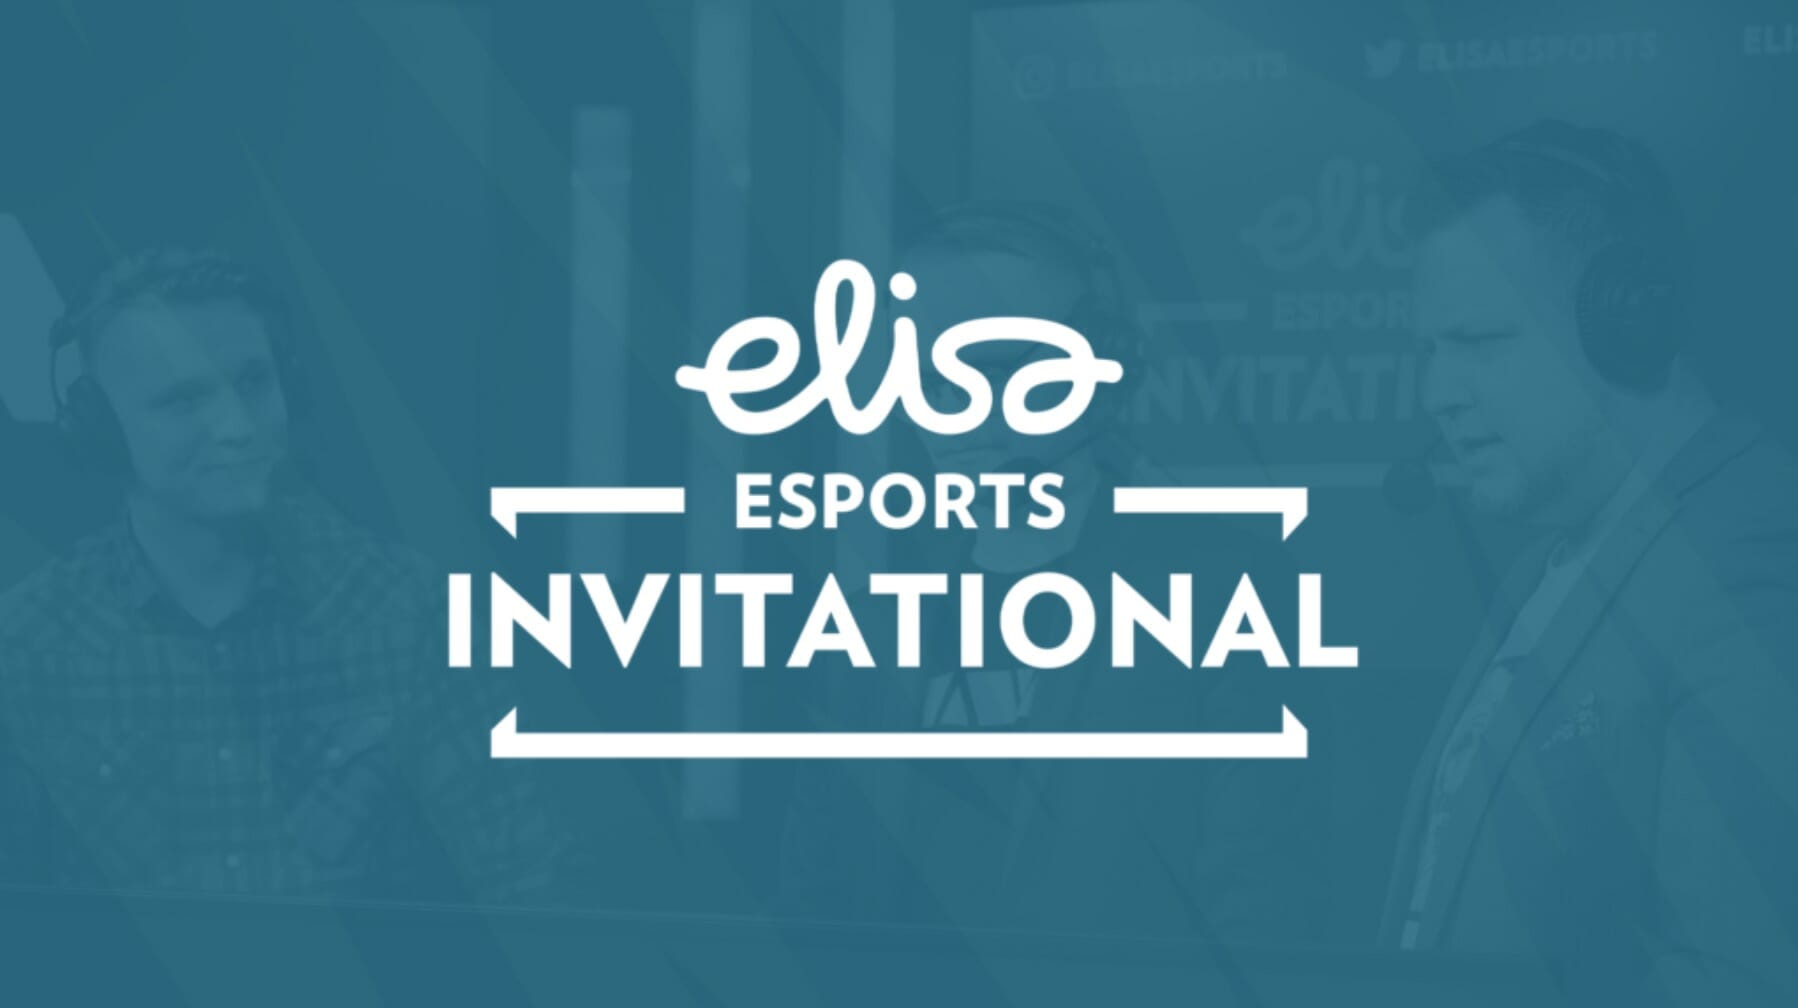 Elisa esports por convite